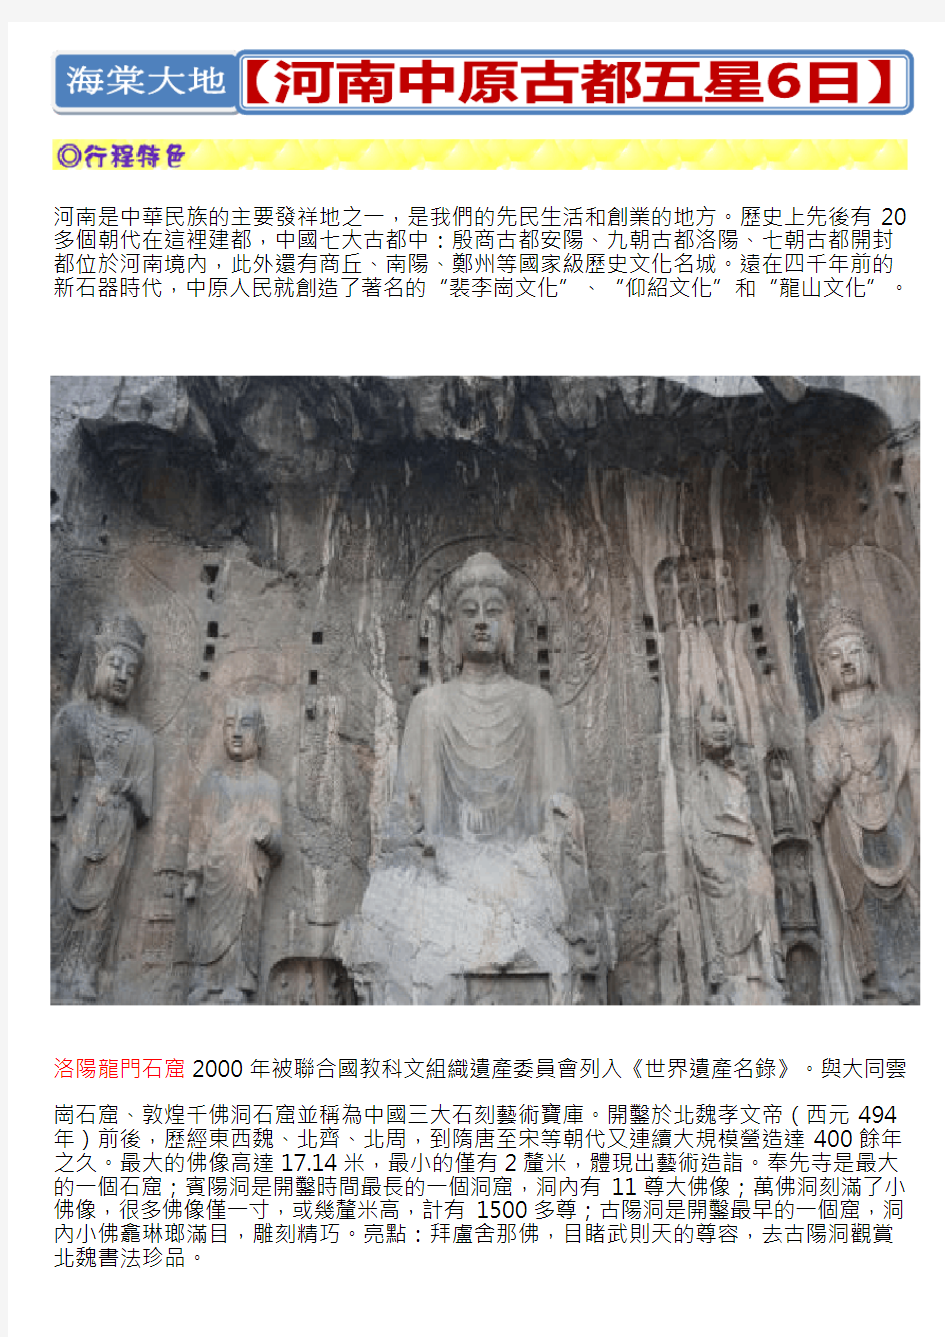 历史上先后有20多个朝代在这里建都中国七大古都中殷